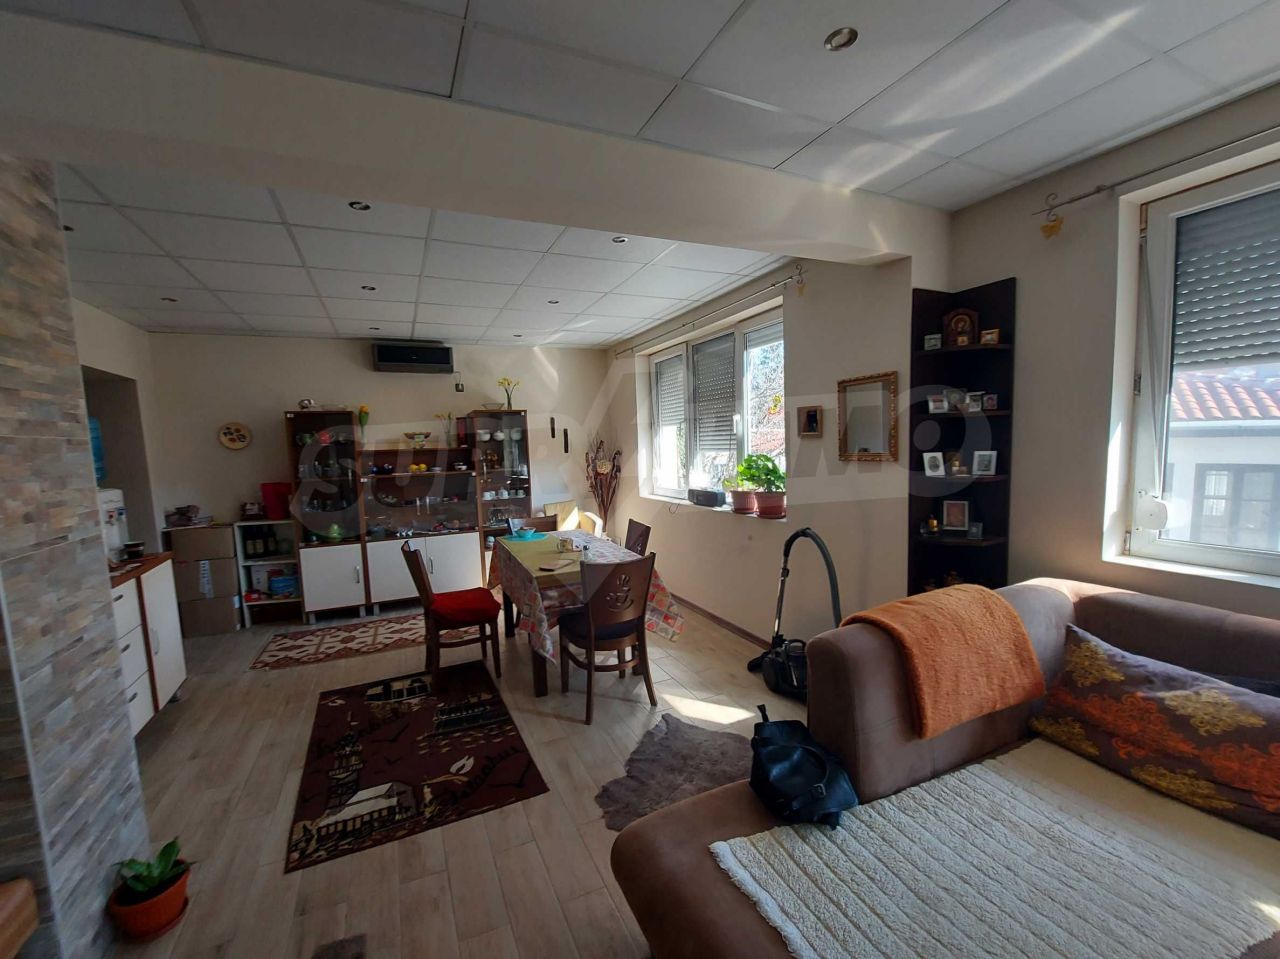 Apartment in Ruse, Bulgaria, 102 sq.m - picture 1